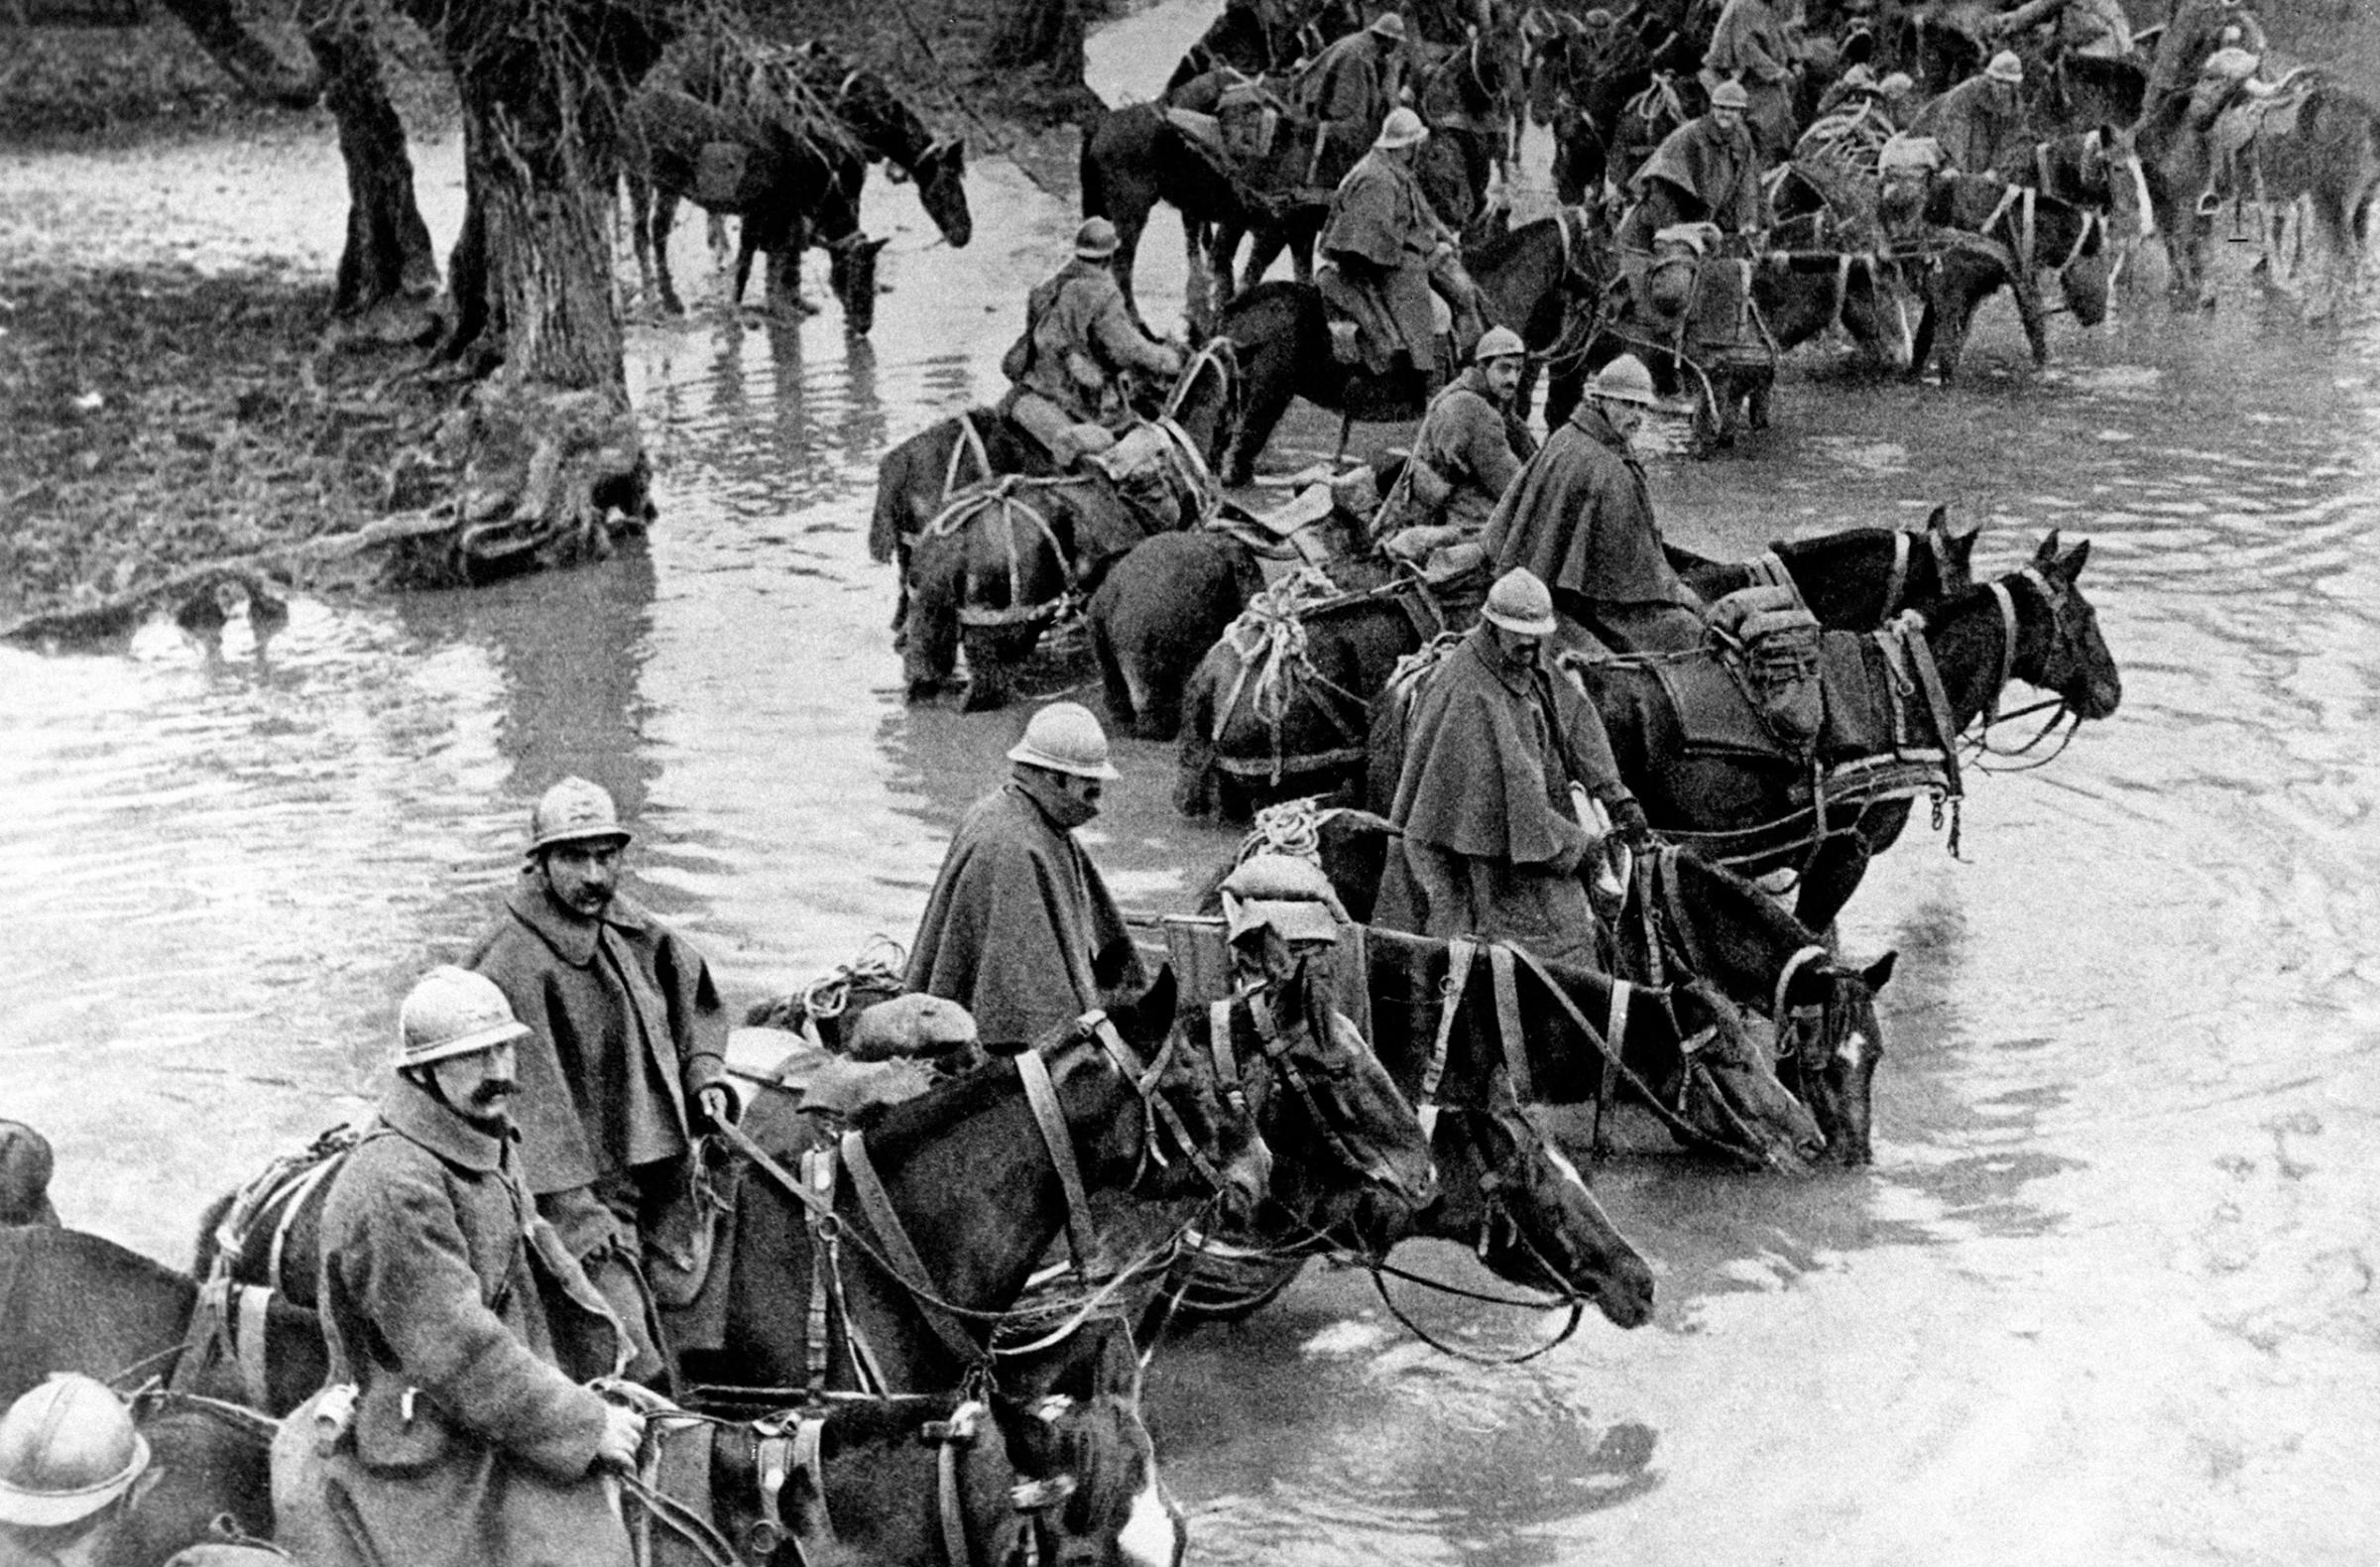 WWI Battle of Verdun in France, 1916.